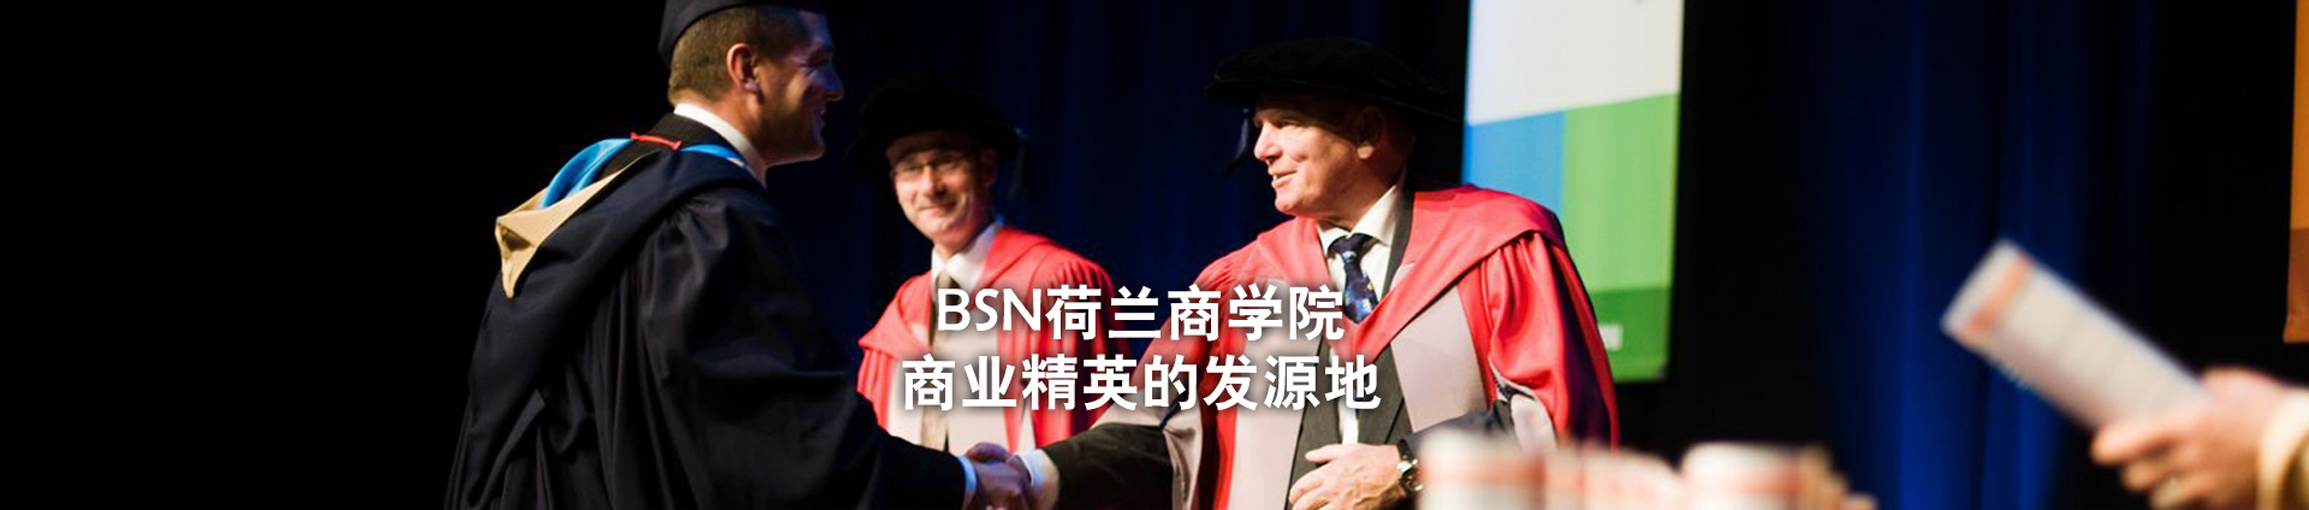 【甘特教育】BSN荷兰商学院高级管理者工商管理博士招生简章